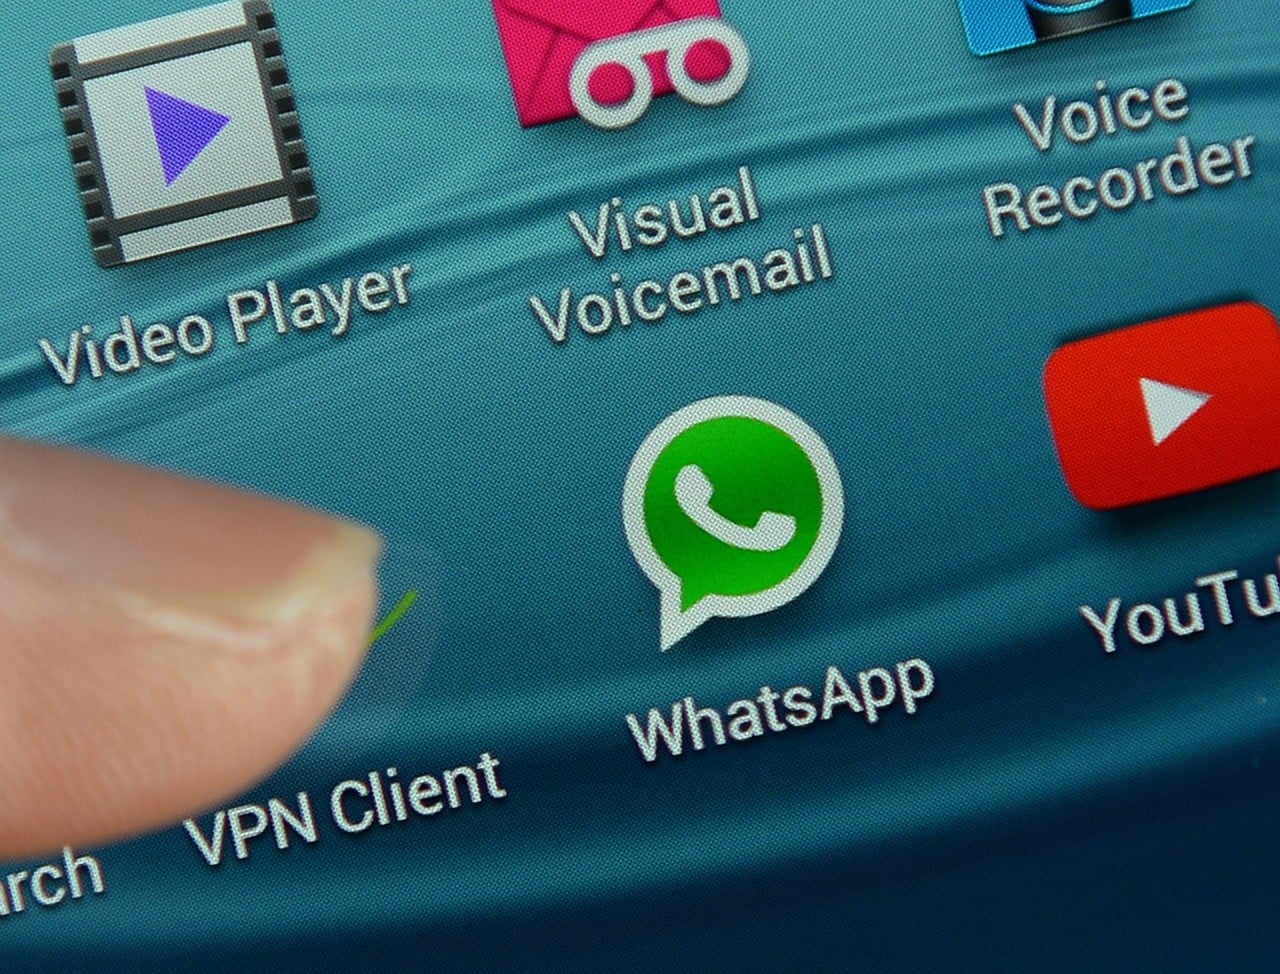 Le notifiche di WhatsApp stanno per diventare più ricche (aggiornato: no)